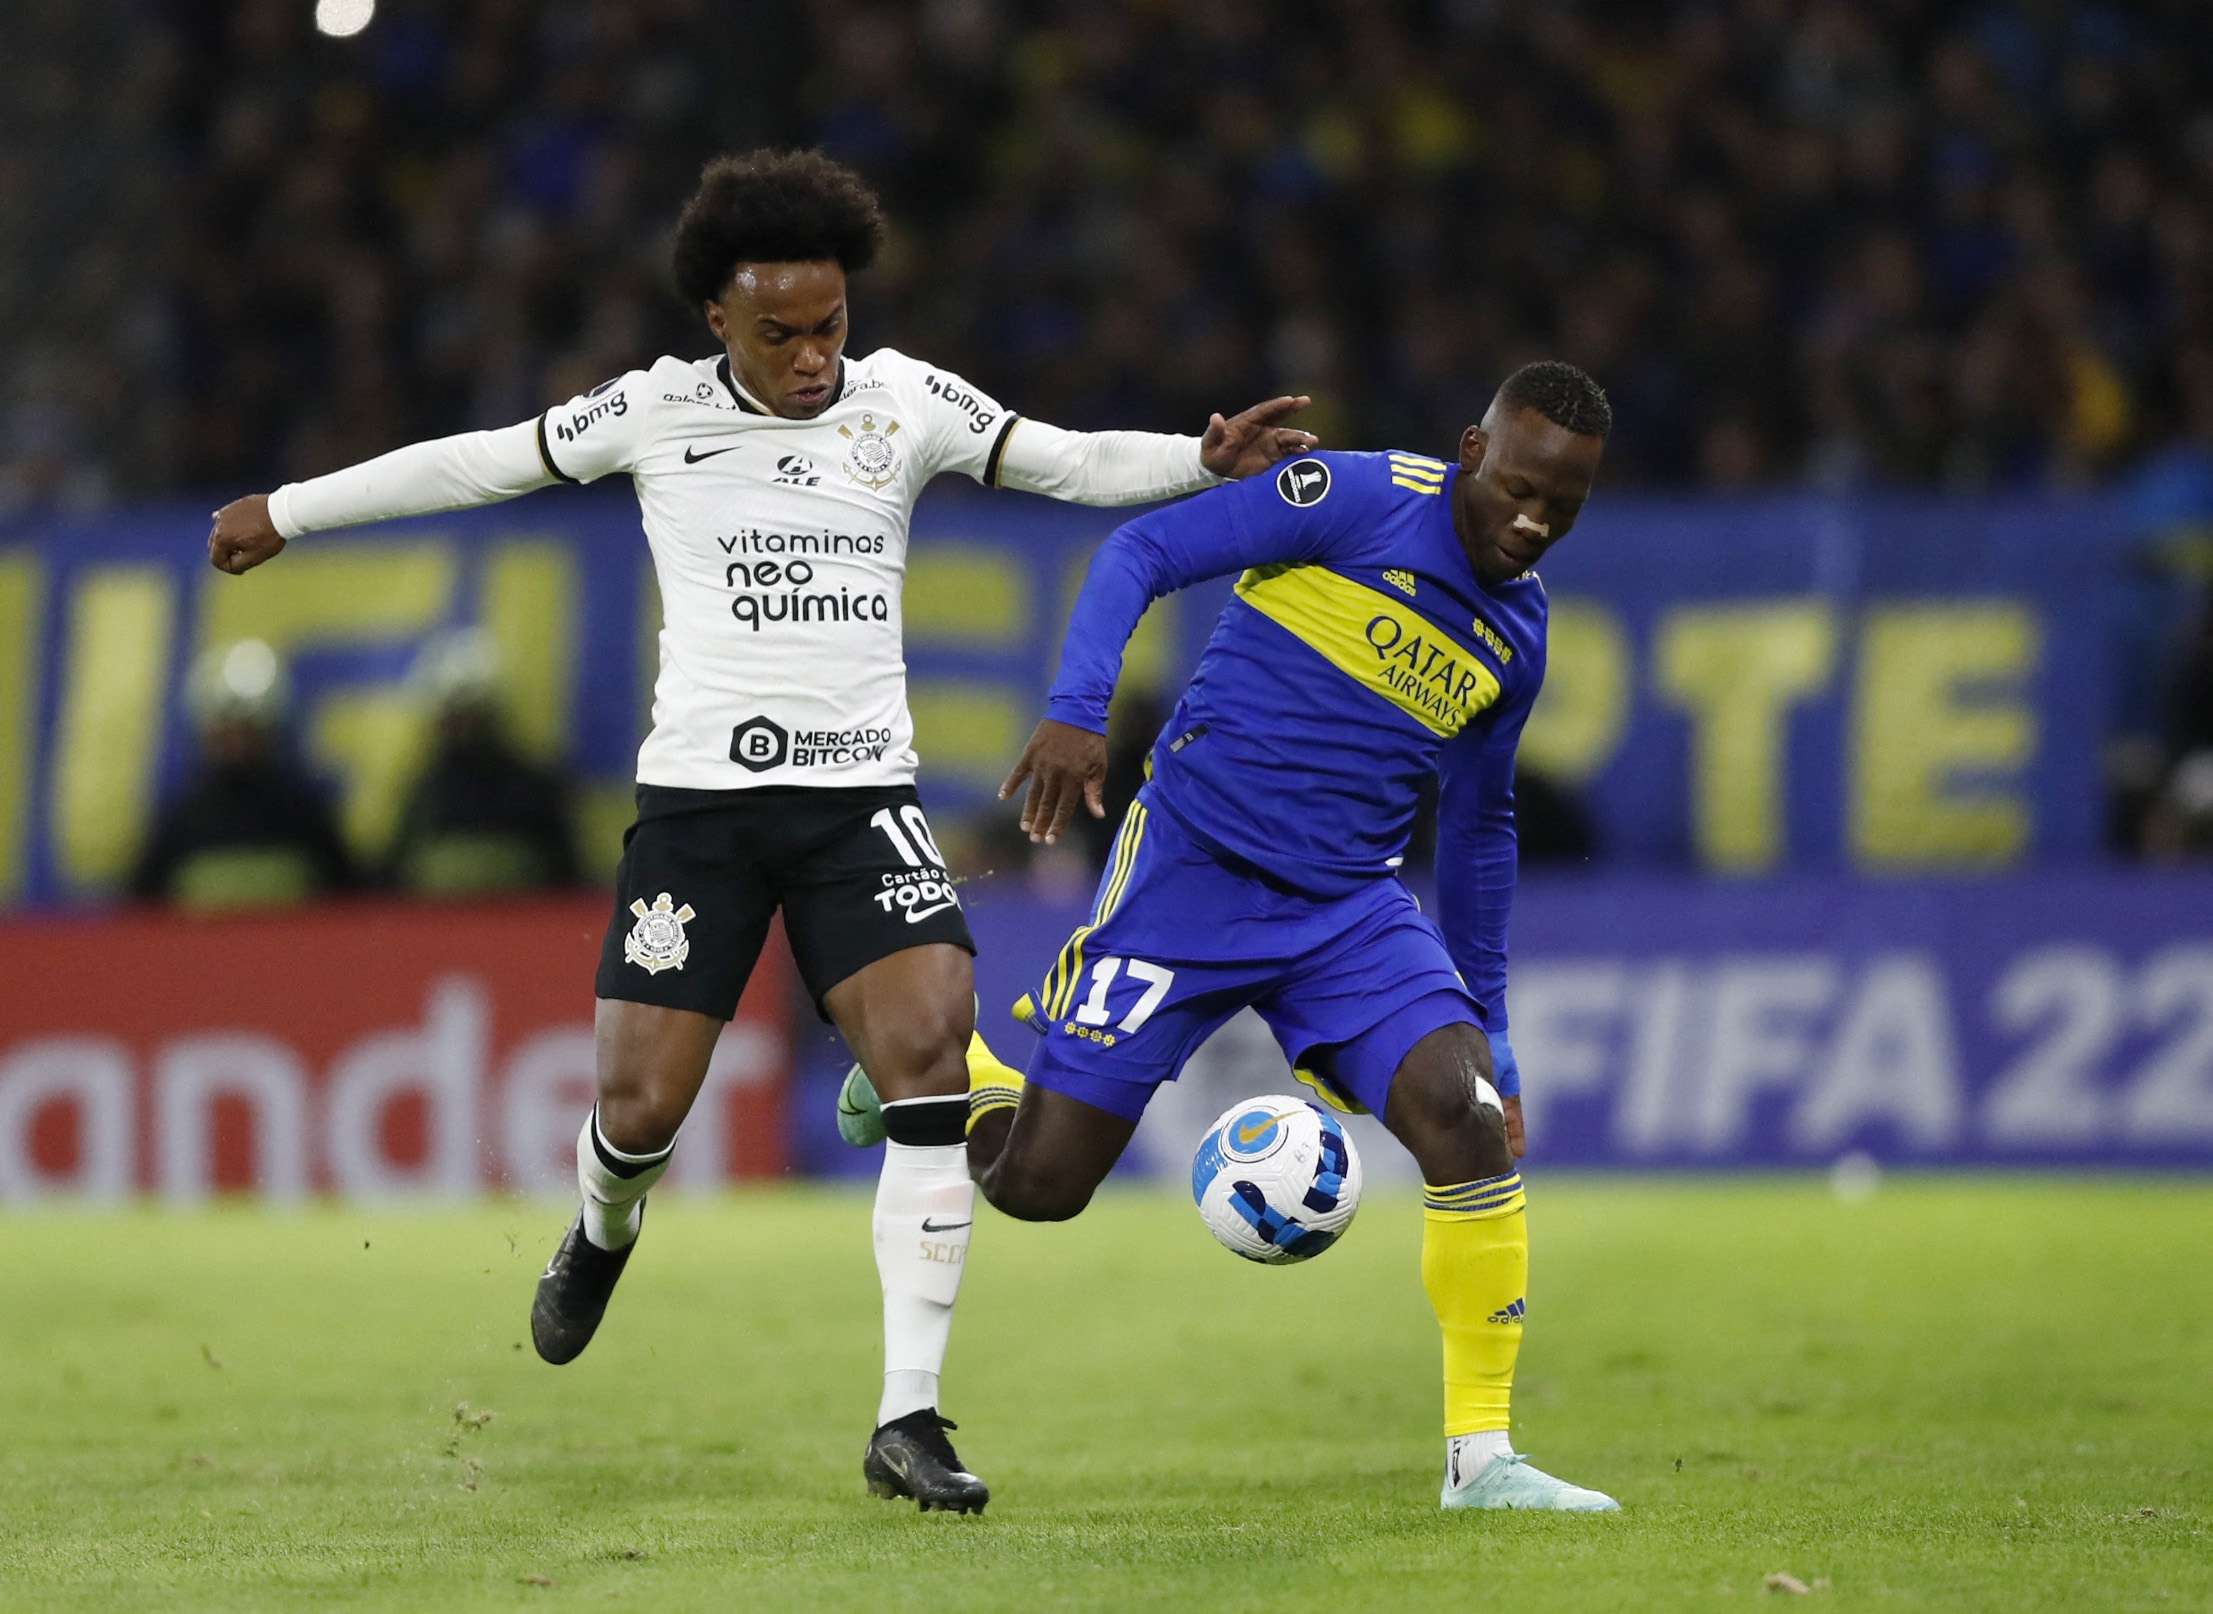 VER EN VIVO Boca Juniors vs Corinthians vía ESPN 2: empatan 1-1 por Copa Libertadores 2022